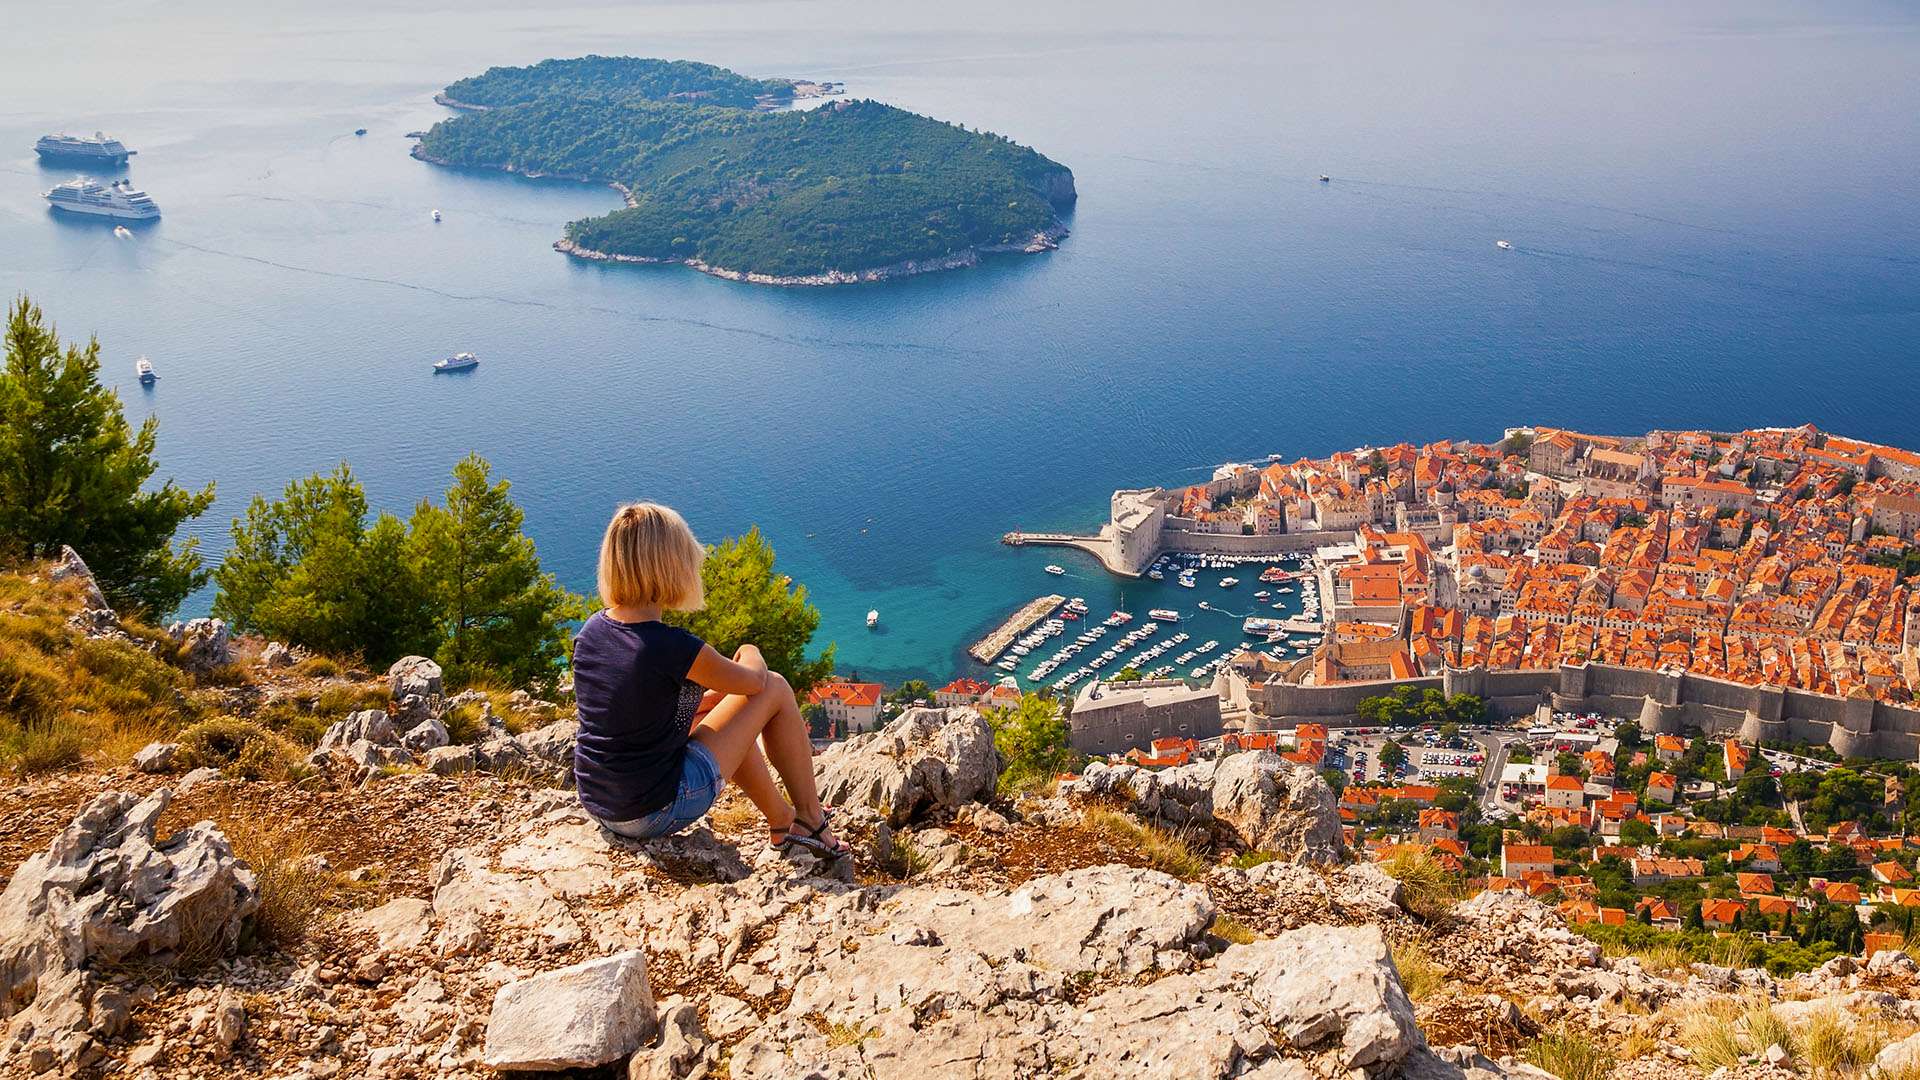 Hrvatski turizam s 27,3 milijuna noćenja u šest mjeseci premašio 2019. godinu